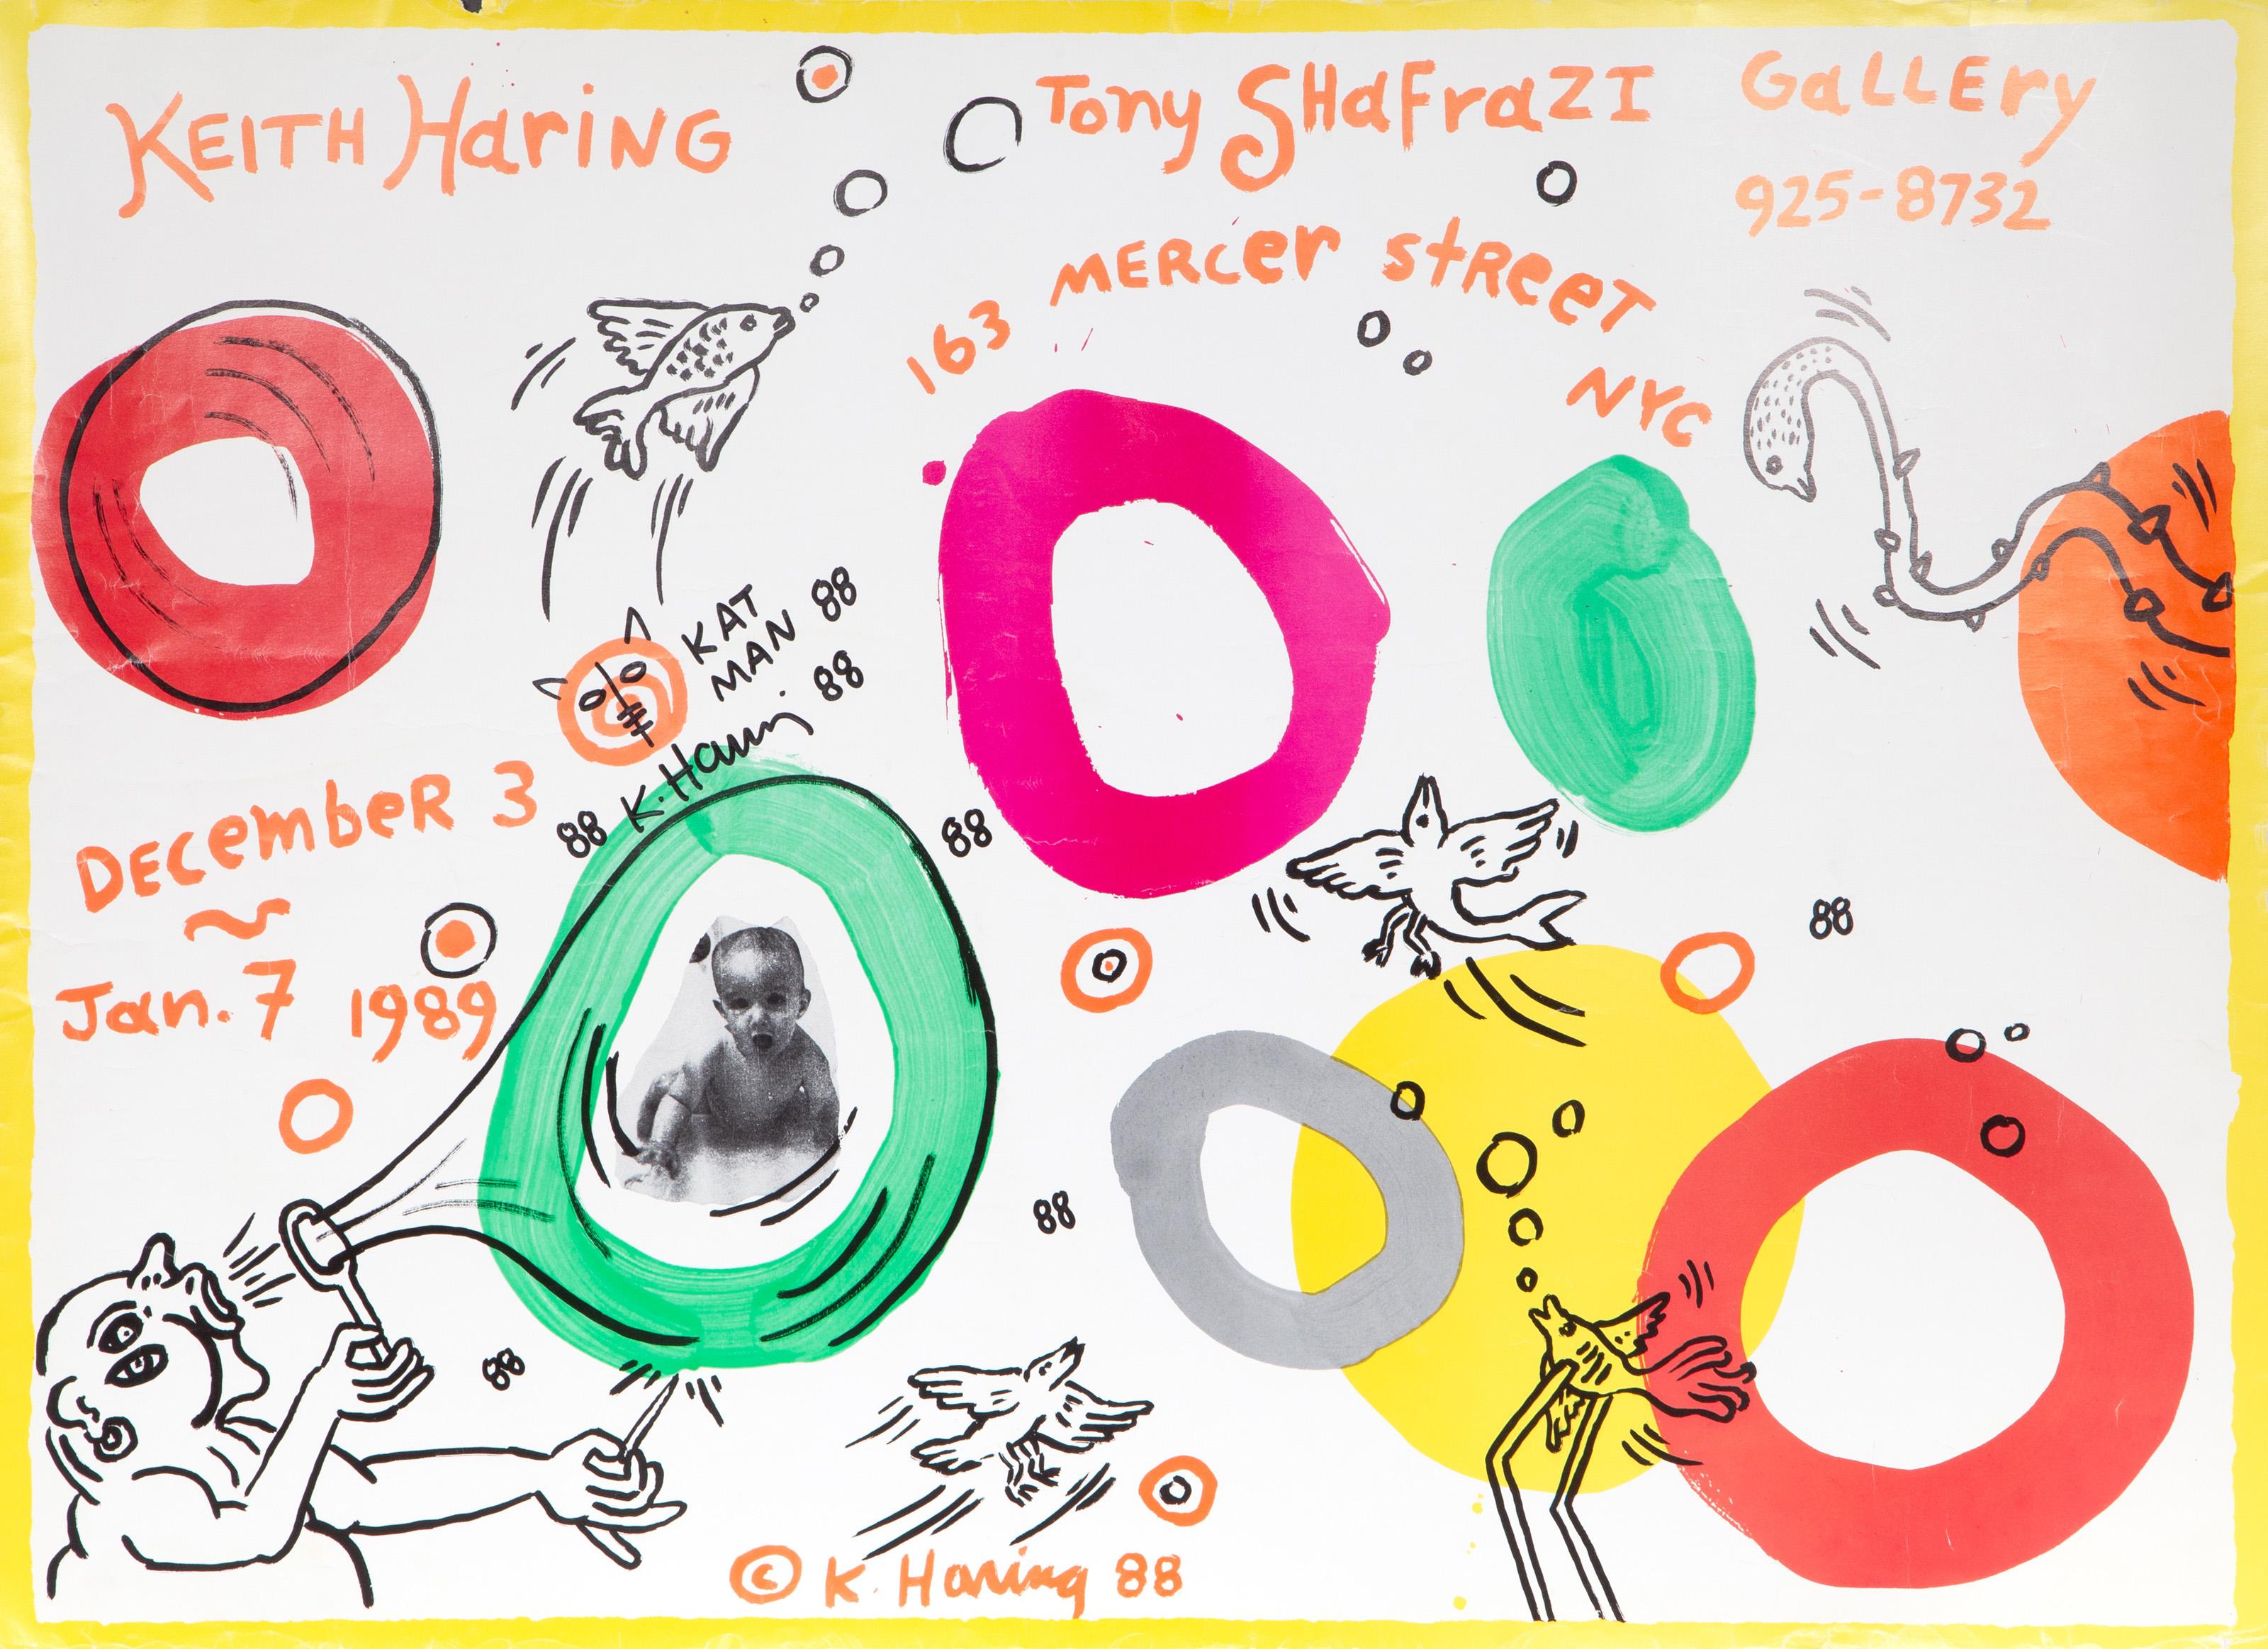 Cette affiche a été réalisée pour annoncer l'exposition de l'artiste pop américain Keith Haring à la Tony Shafrazi Gallery en 1989. Il présente une série de "bulles" colorées autour desquelles volent et nagent plusieurs animaux illustrés.

Galerie